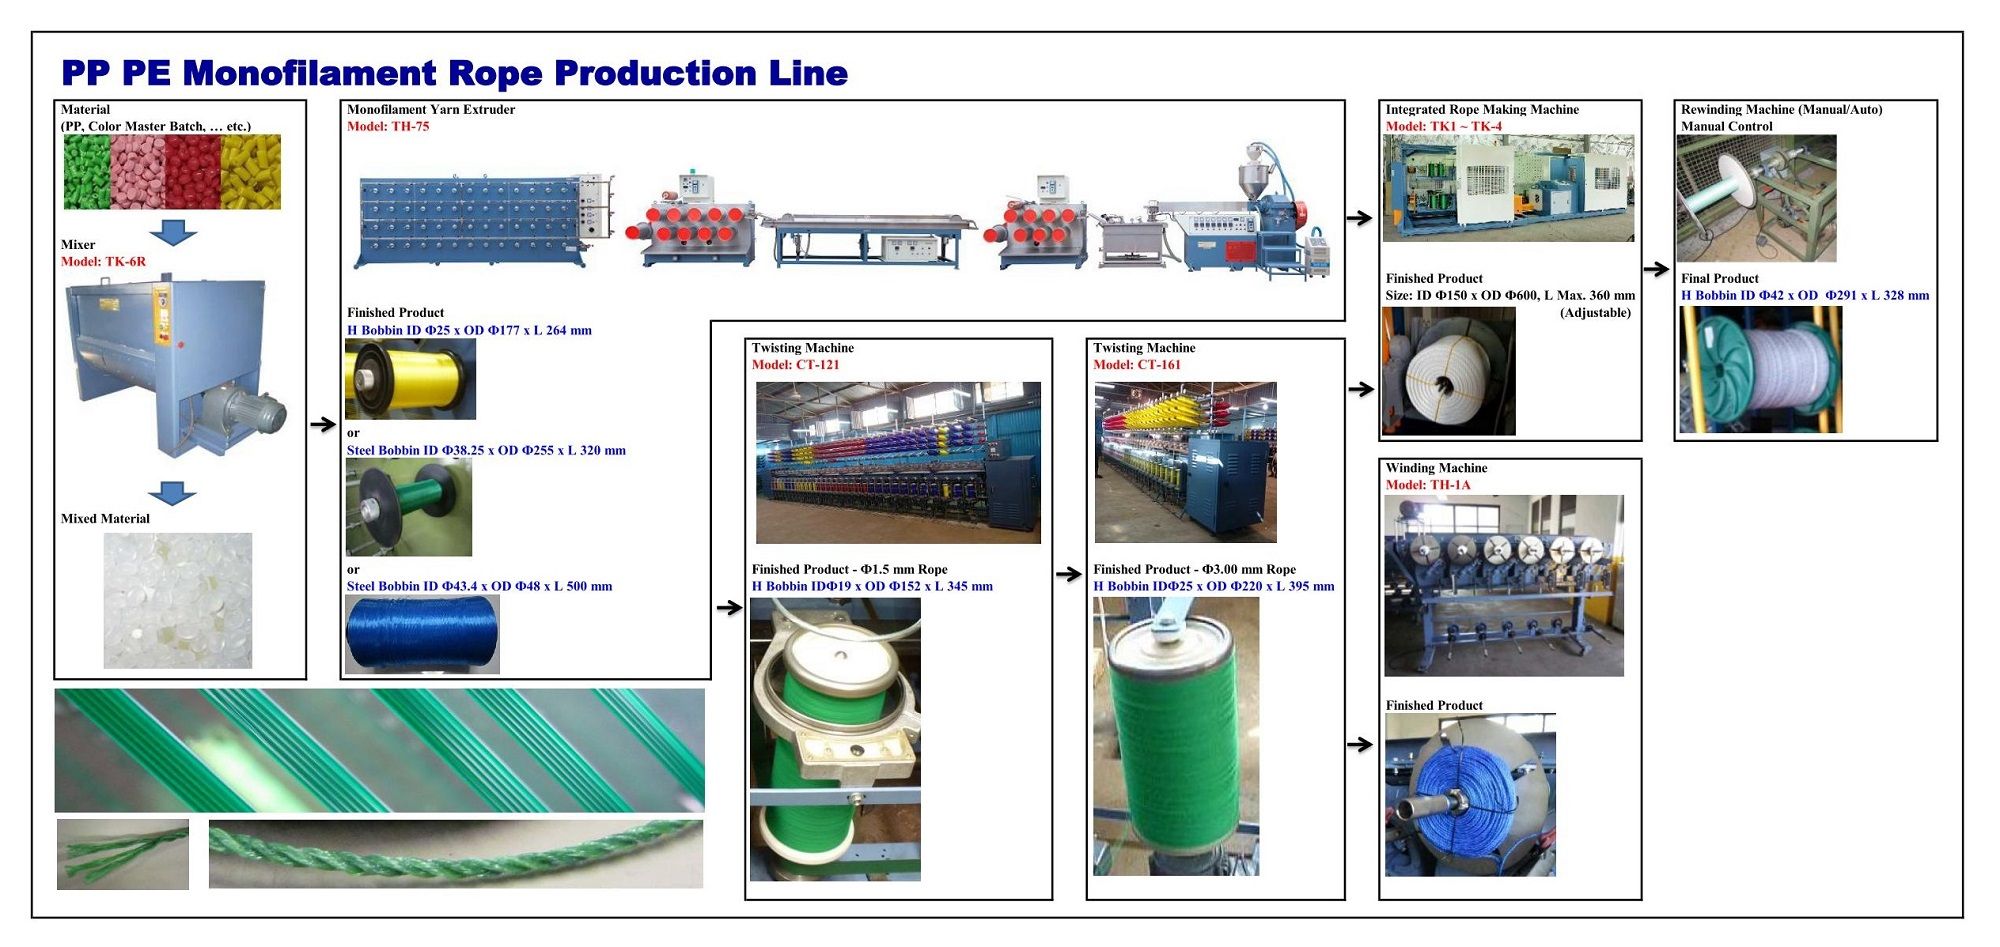 Monofilament production line flow chart